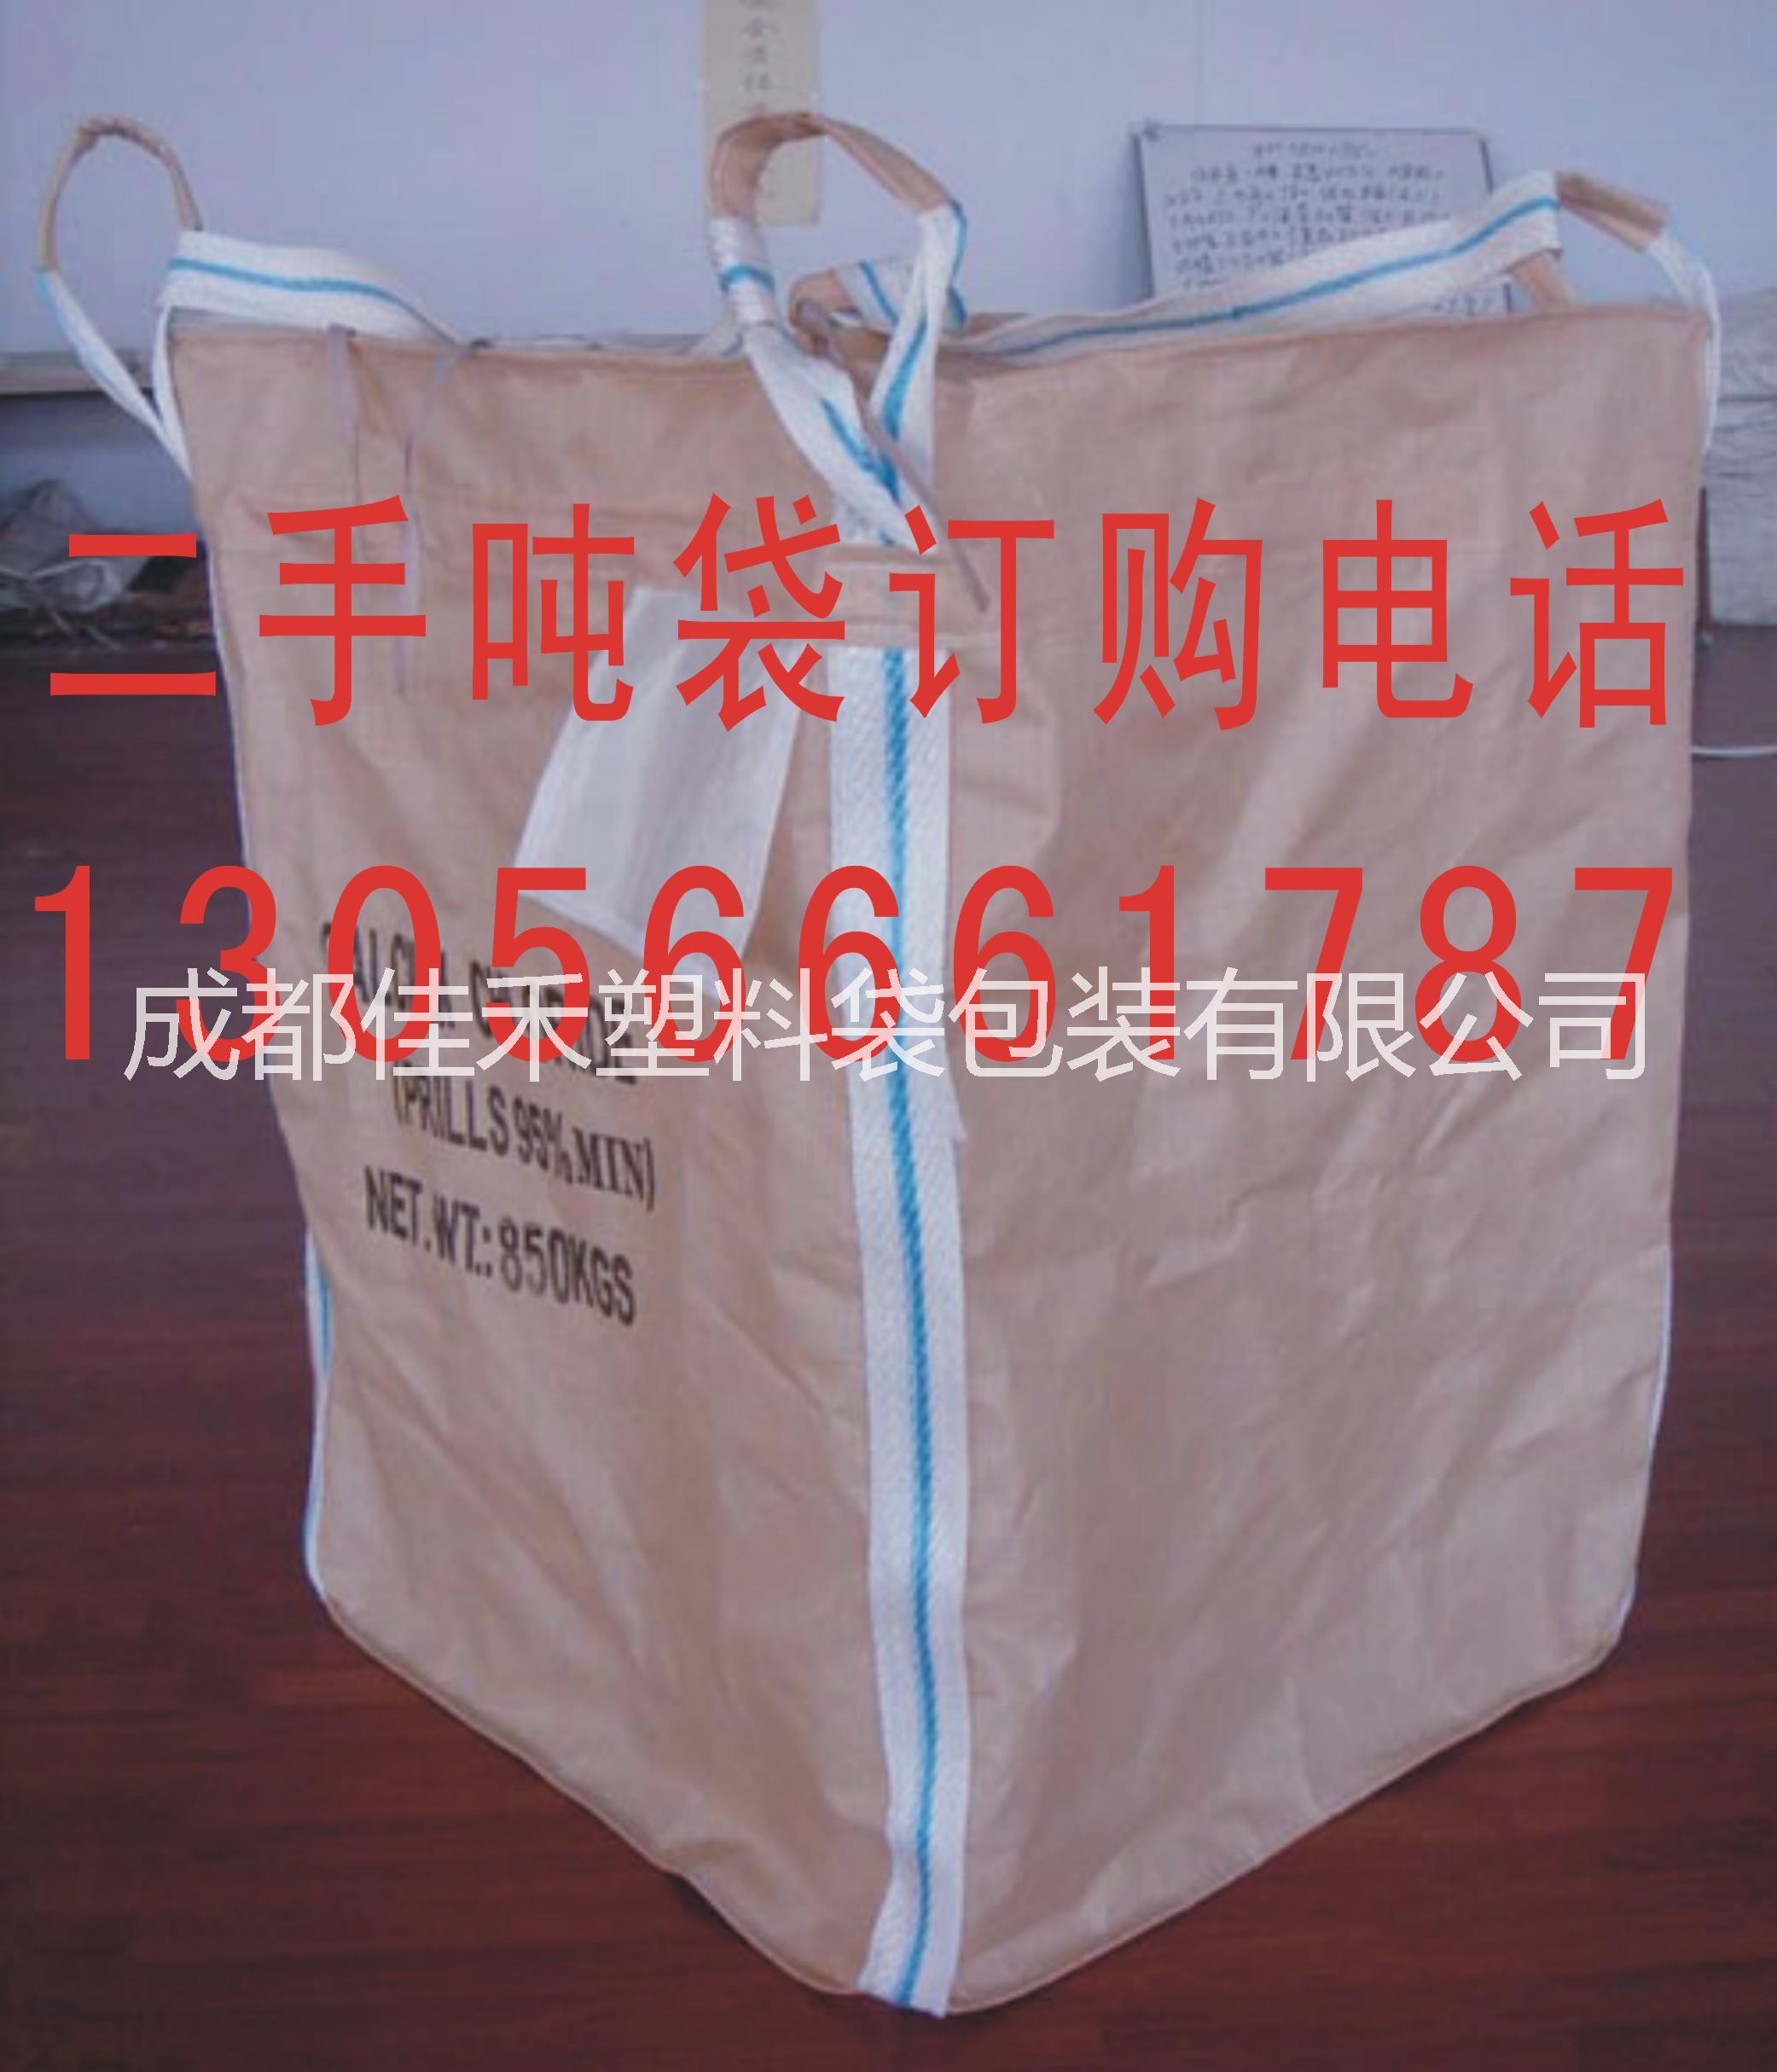 成都嘉禾吨袋包装公司是一家专业做吨袋的厂家